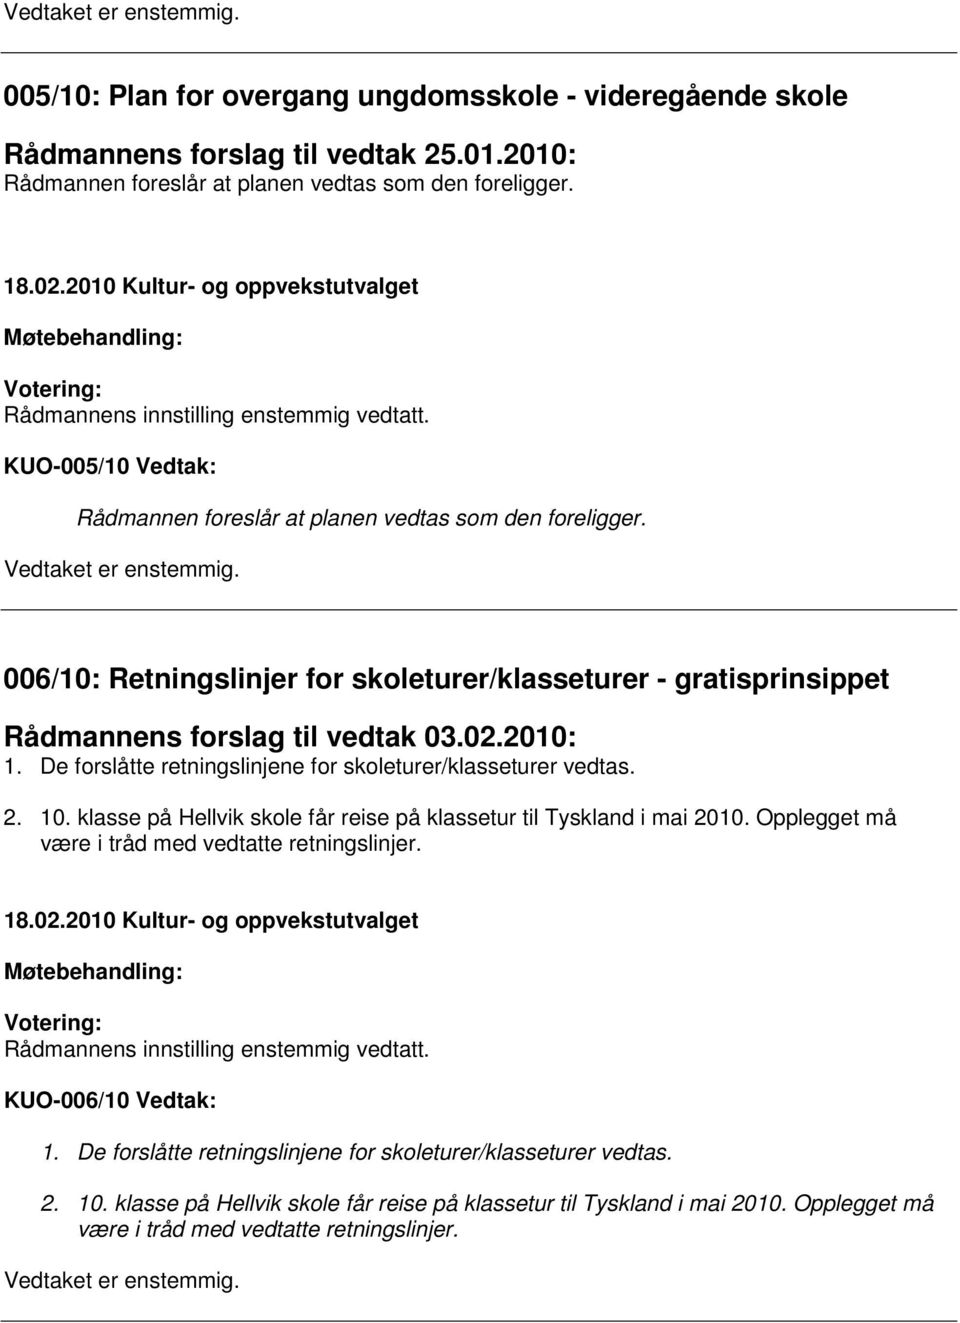 De forslåtte retningslinjene for skoleturer/klasseturer vedtas. 2. 10. klasse på Hellvik skole får reise på klassetur til Tyskland i mai 2010. Opplegget må være i tråd med vedtatte retningslinjer.